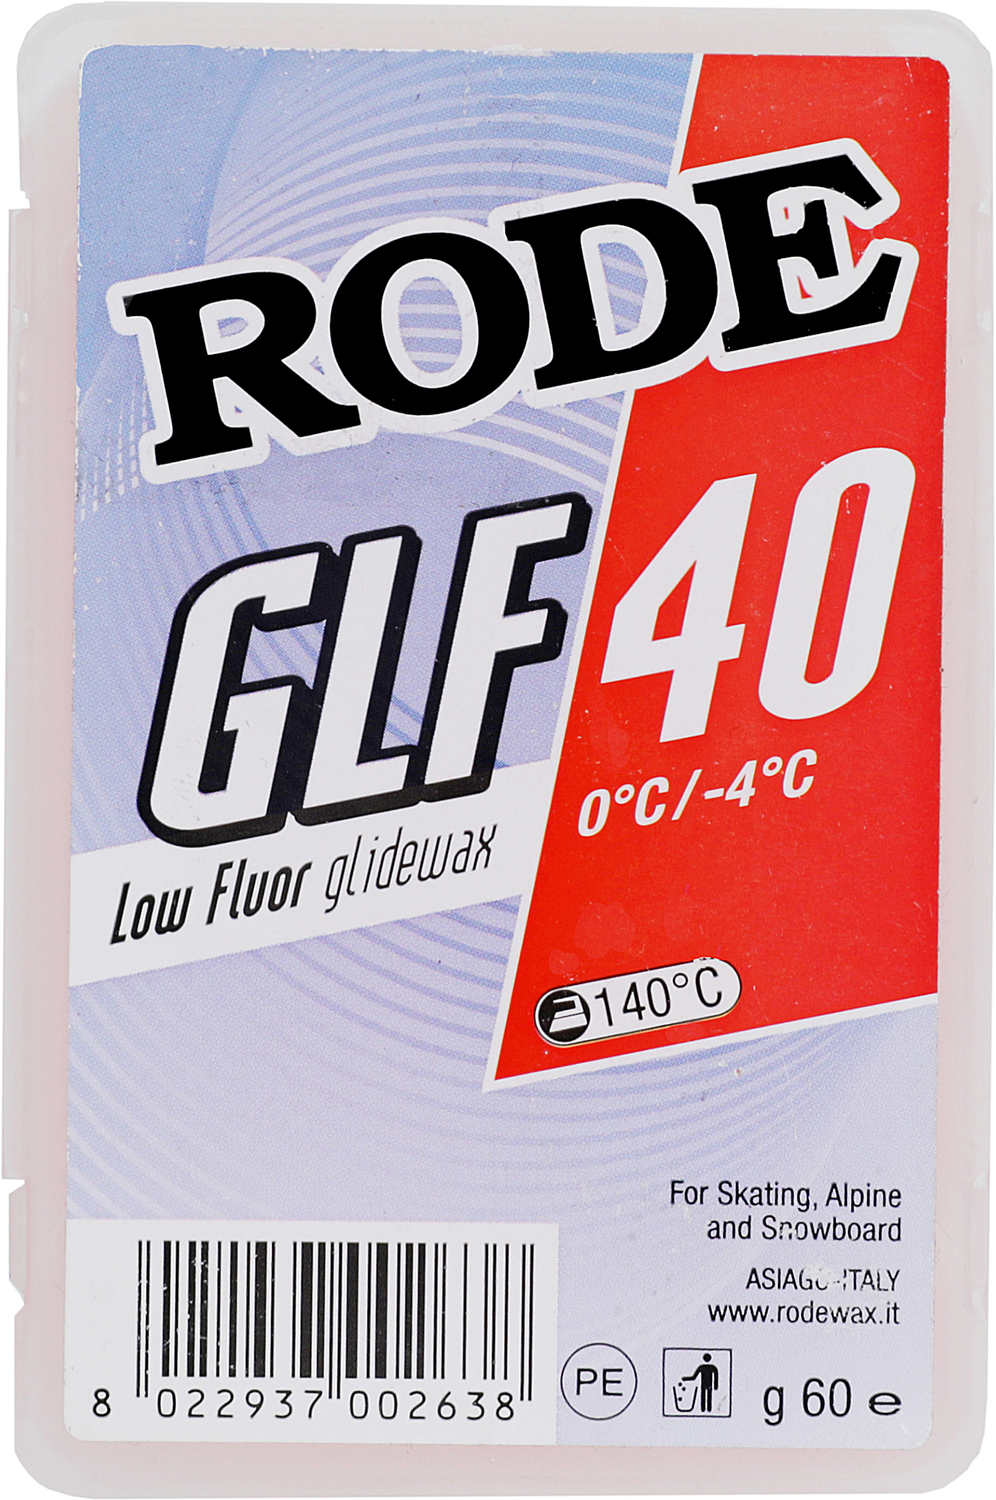 Низкофтористый парафин скольжения твердый RODE Glider low fluor red 60gr. 0C°...-4C°